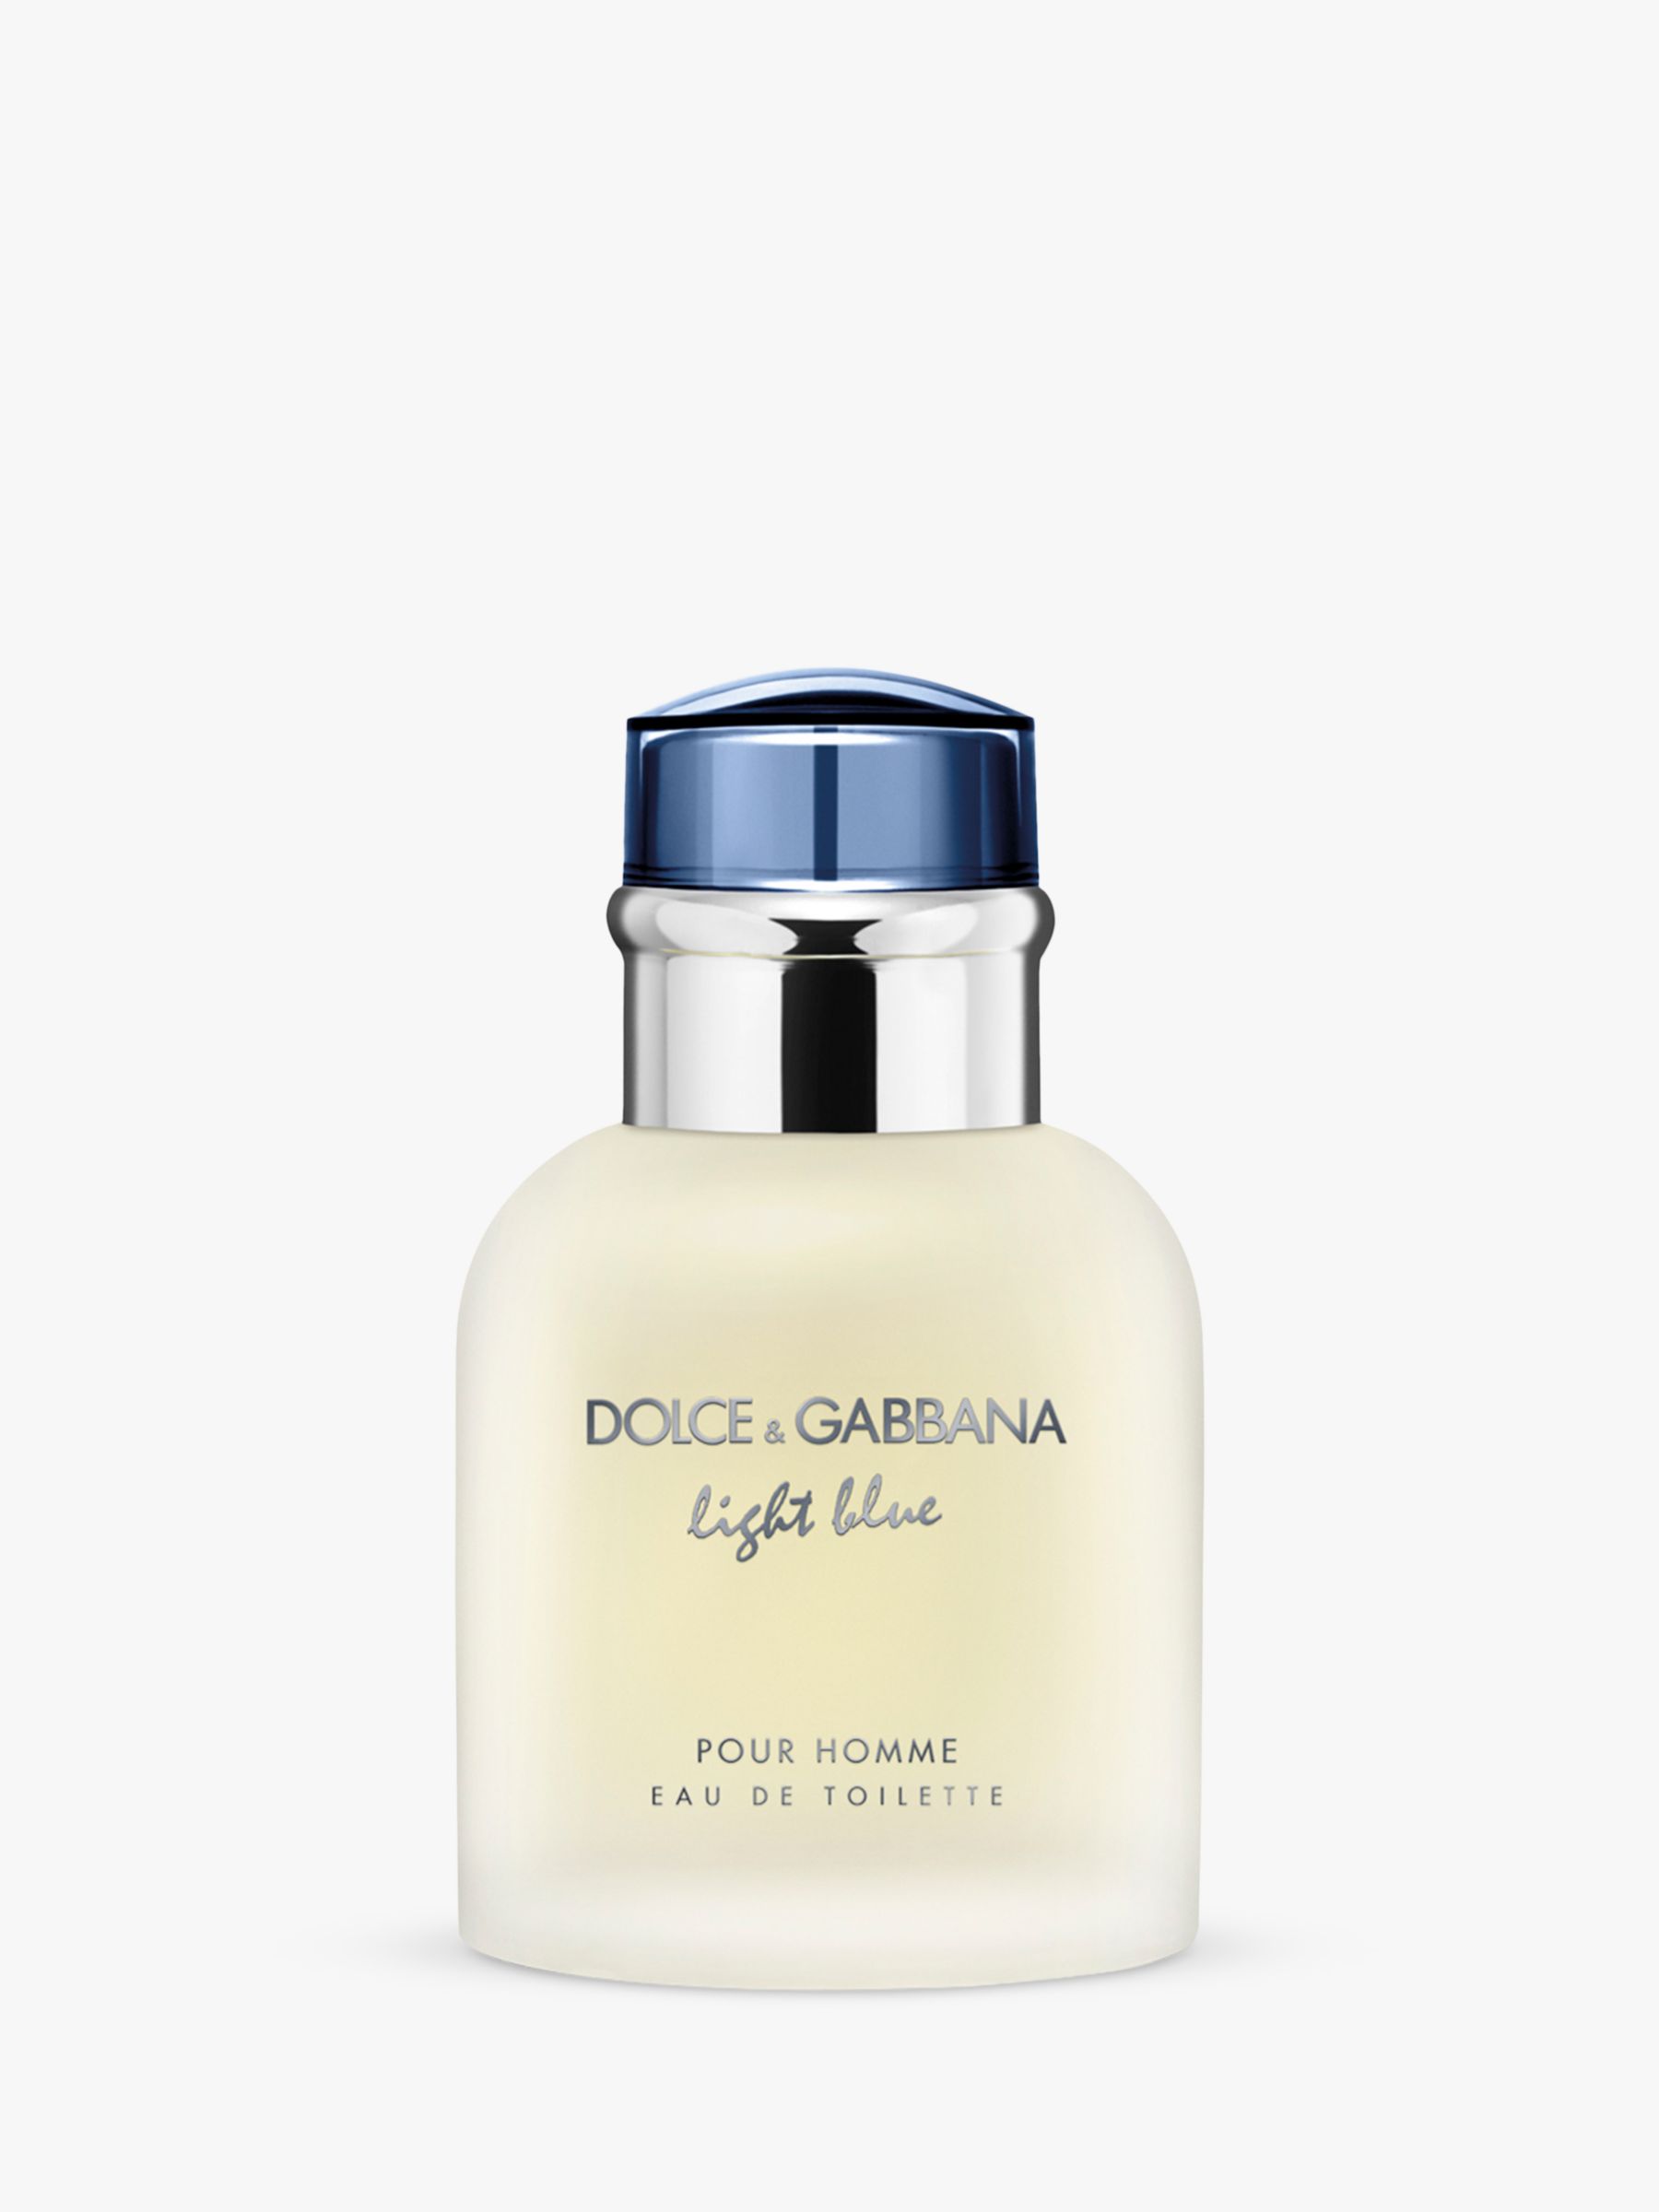 Dolce & Gabbana Light Blue Pour Homme Eau de Toilette, 40ml at John Lewis &  Partners